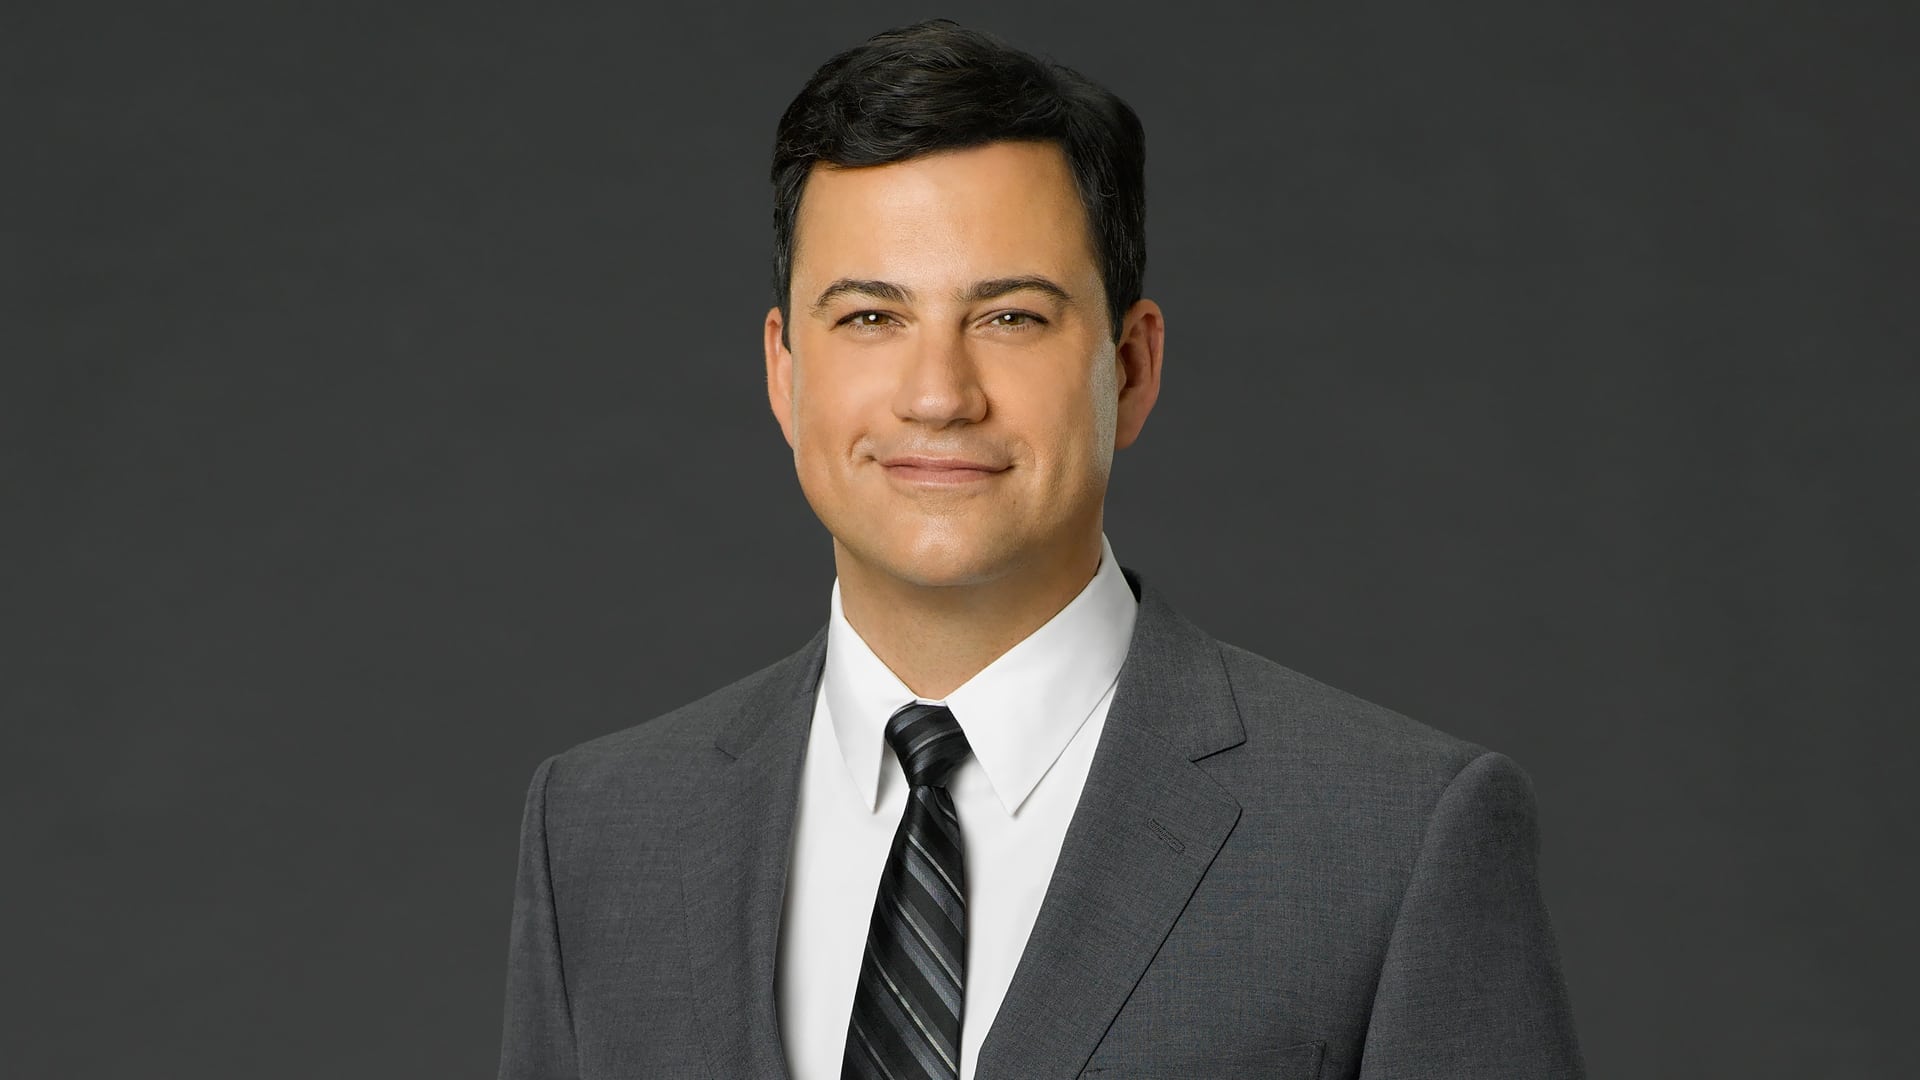 Jimmy Kimmel Live! - Season 22 Episode 30